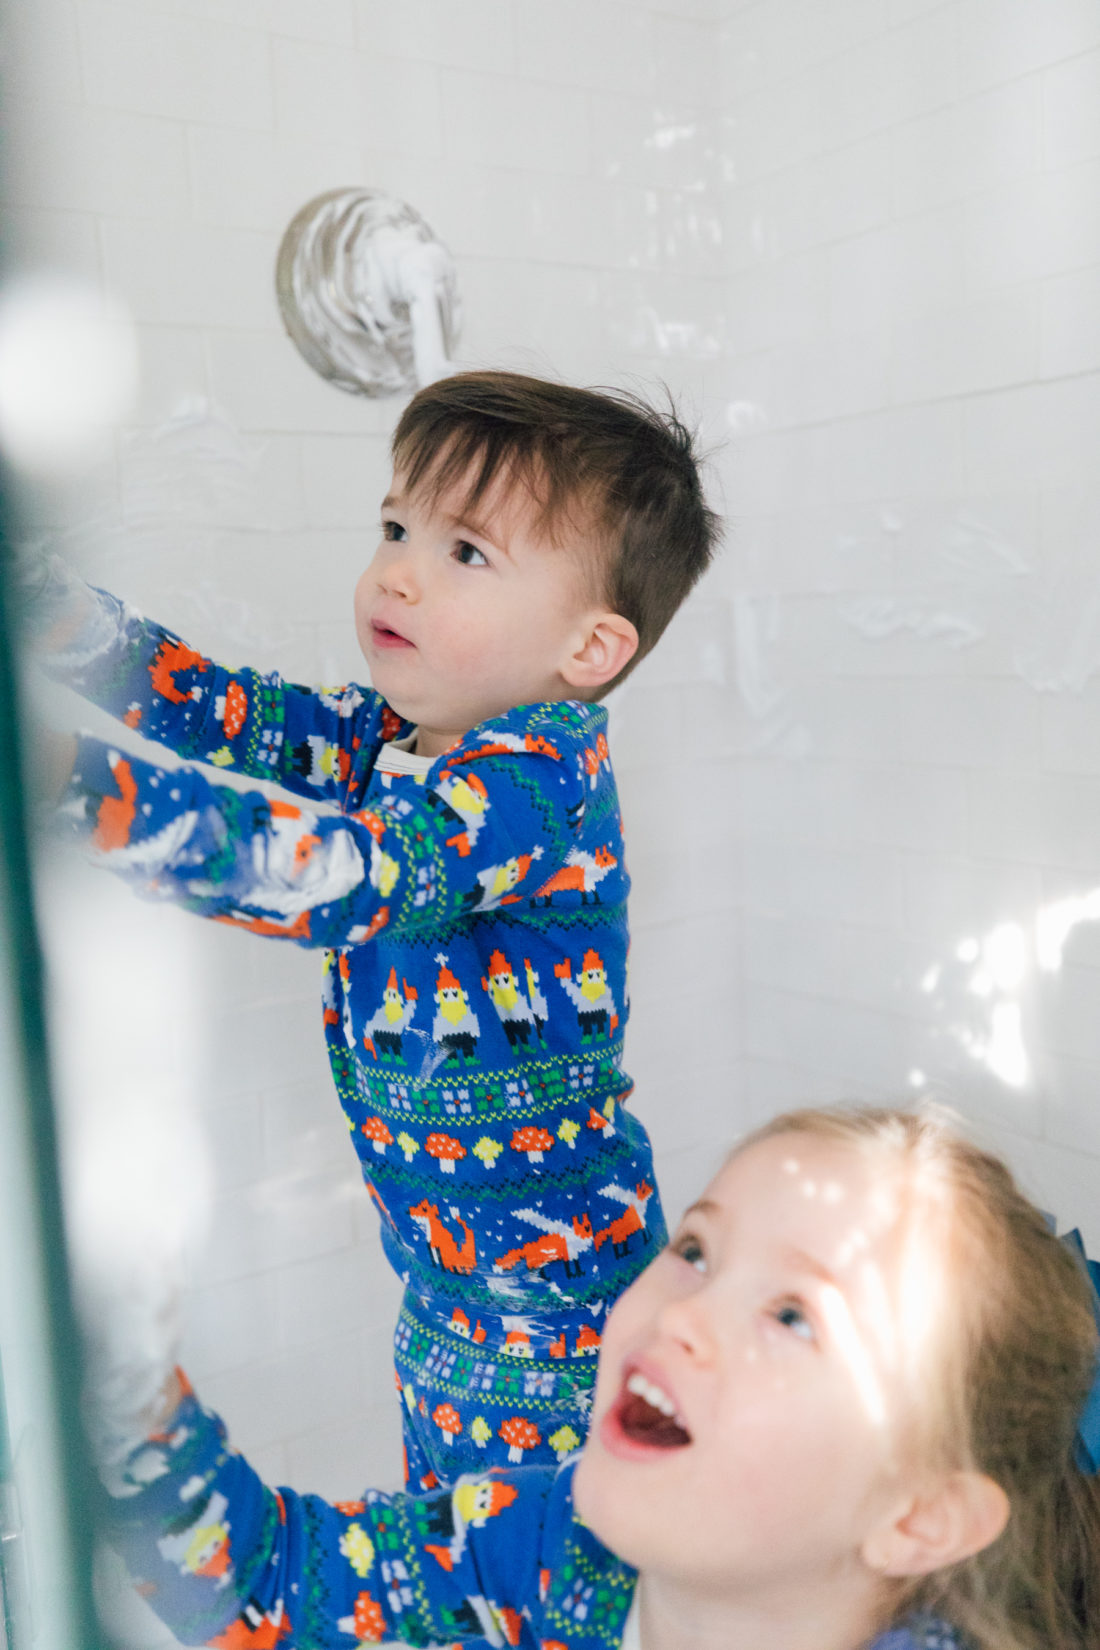 Eva Amurri Martino's son Major wears printed pajamas while entertaining himself at home